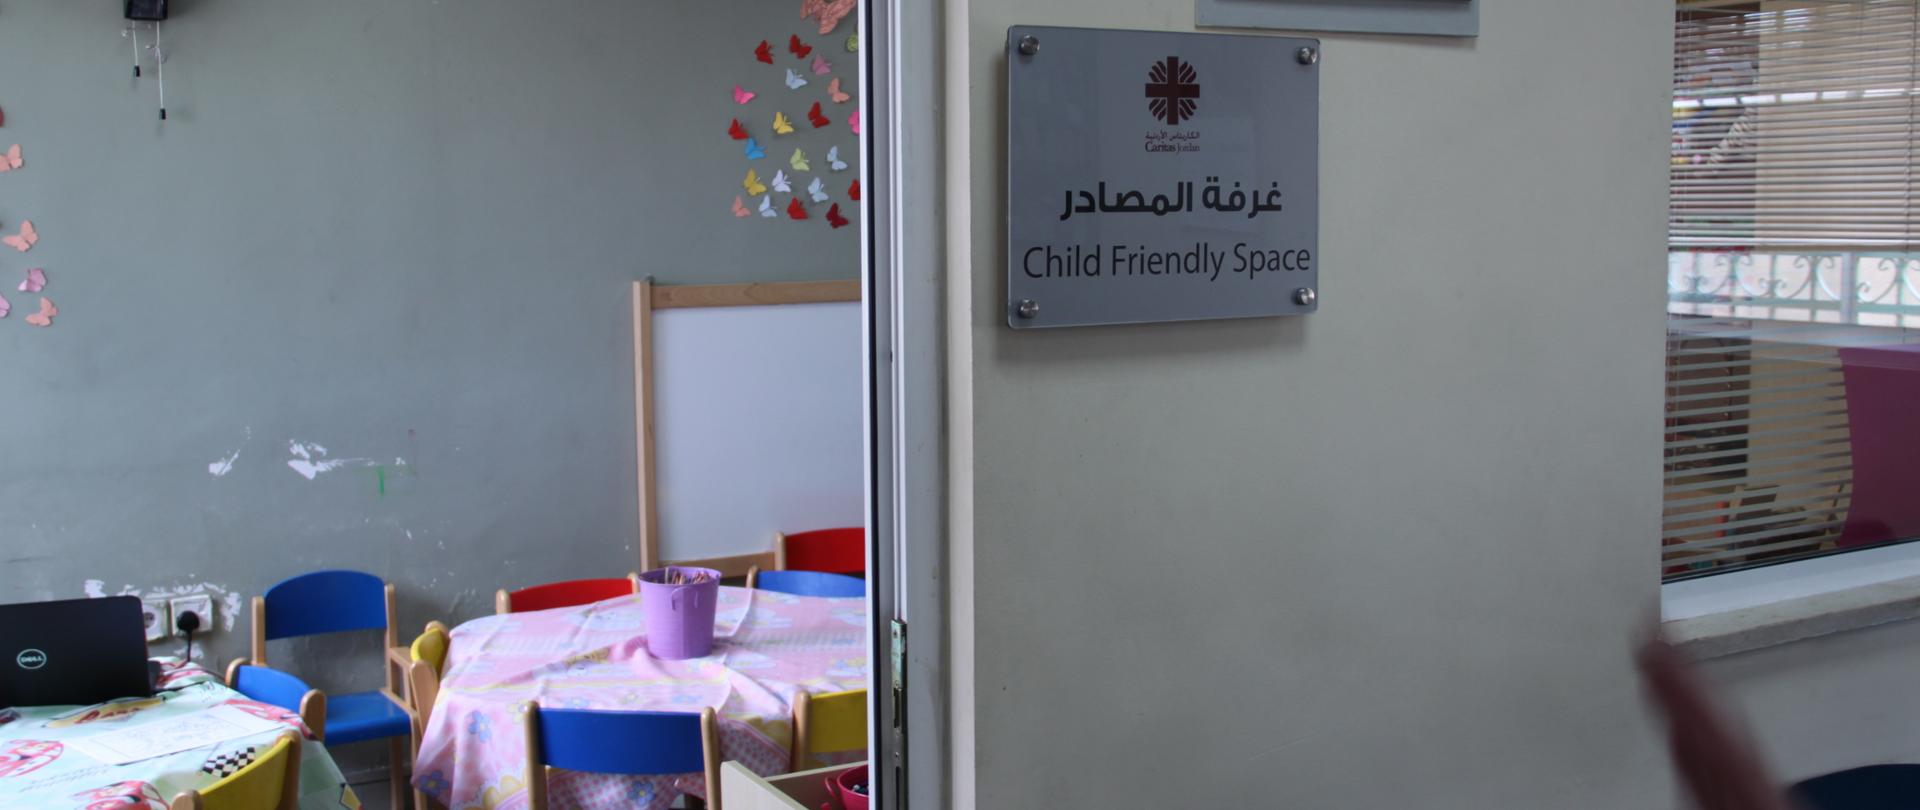 tabliczka informacyjna o sali zabaw dla dzieci z informacją, iż jest to miejsce prowadzone przez Caritas Jordania